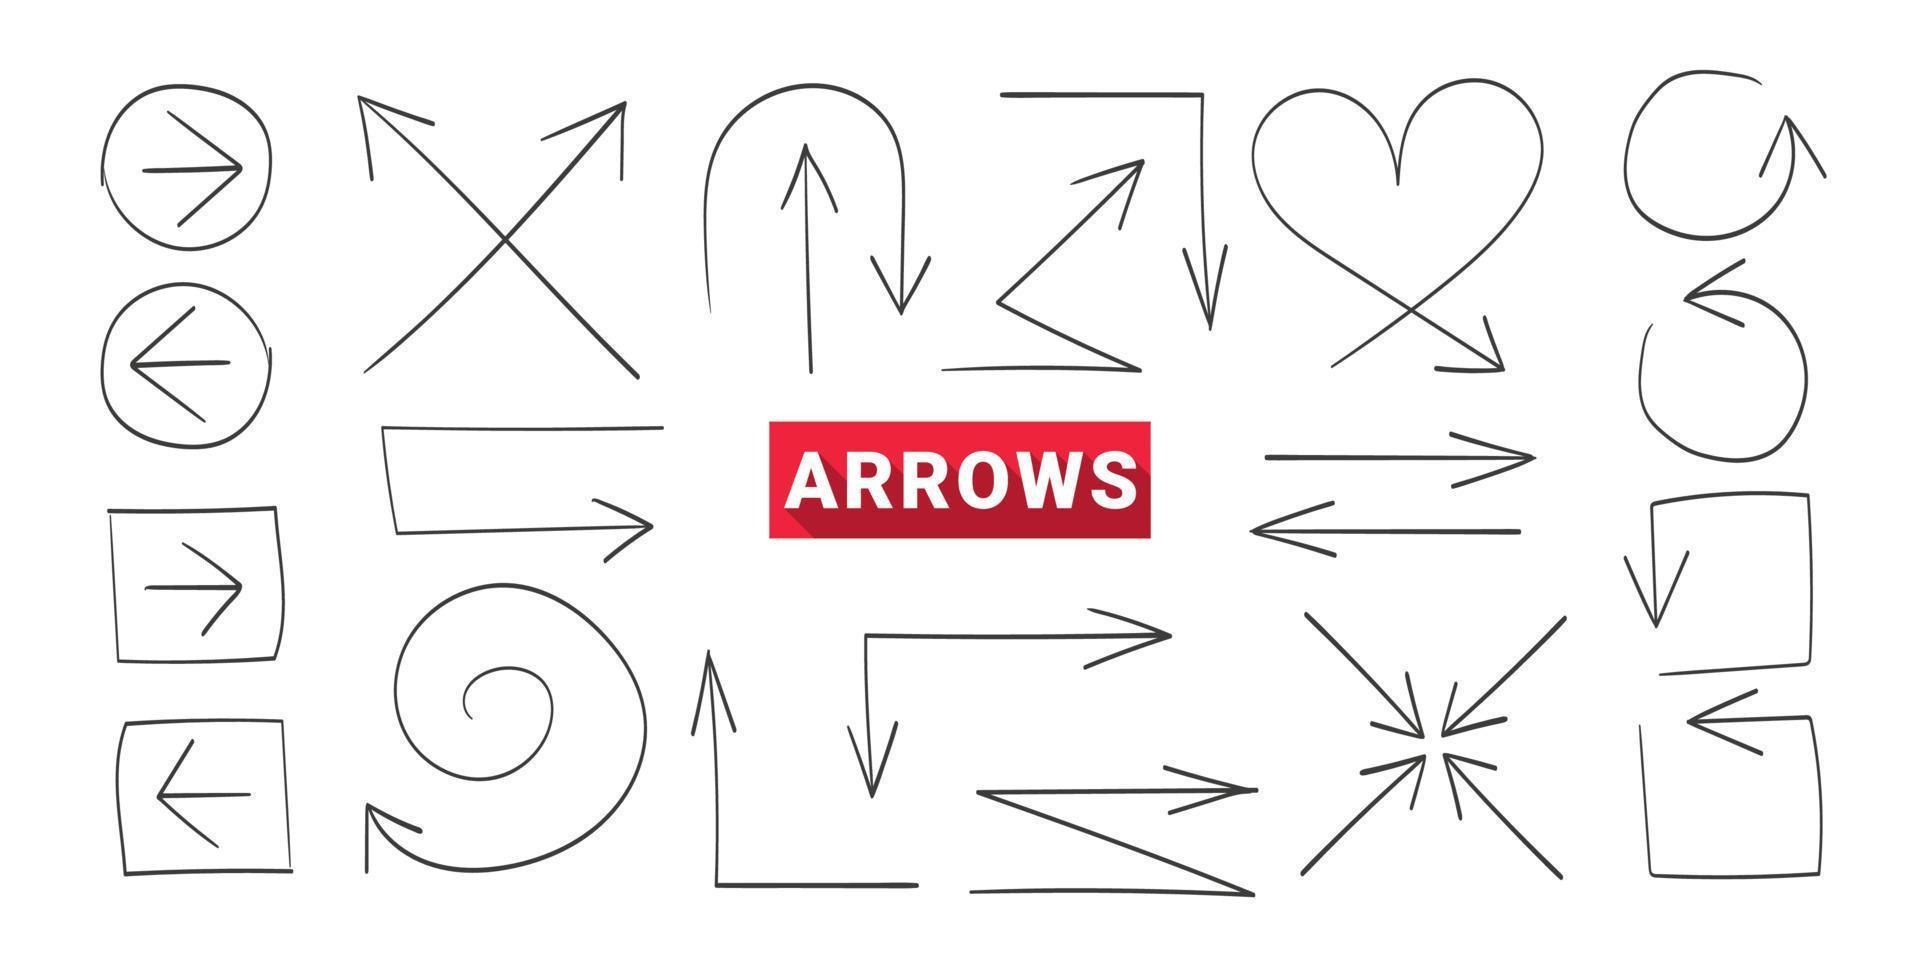 Arrows. Hand drawn arrows. Curved arrows. Concept arrows set. Vector illustration